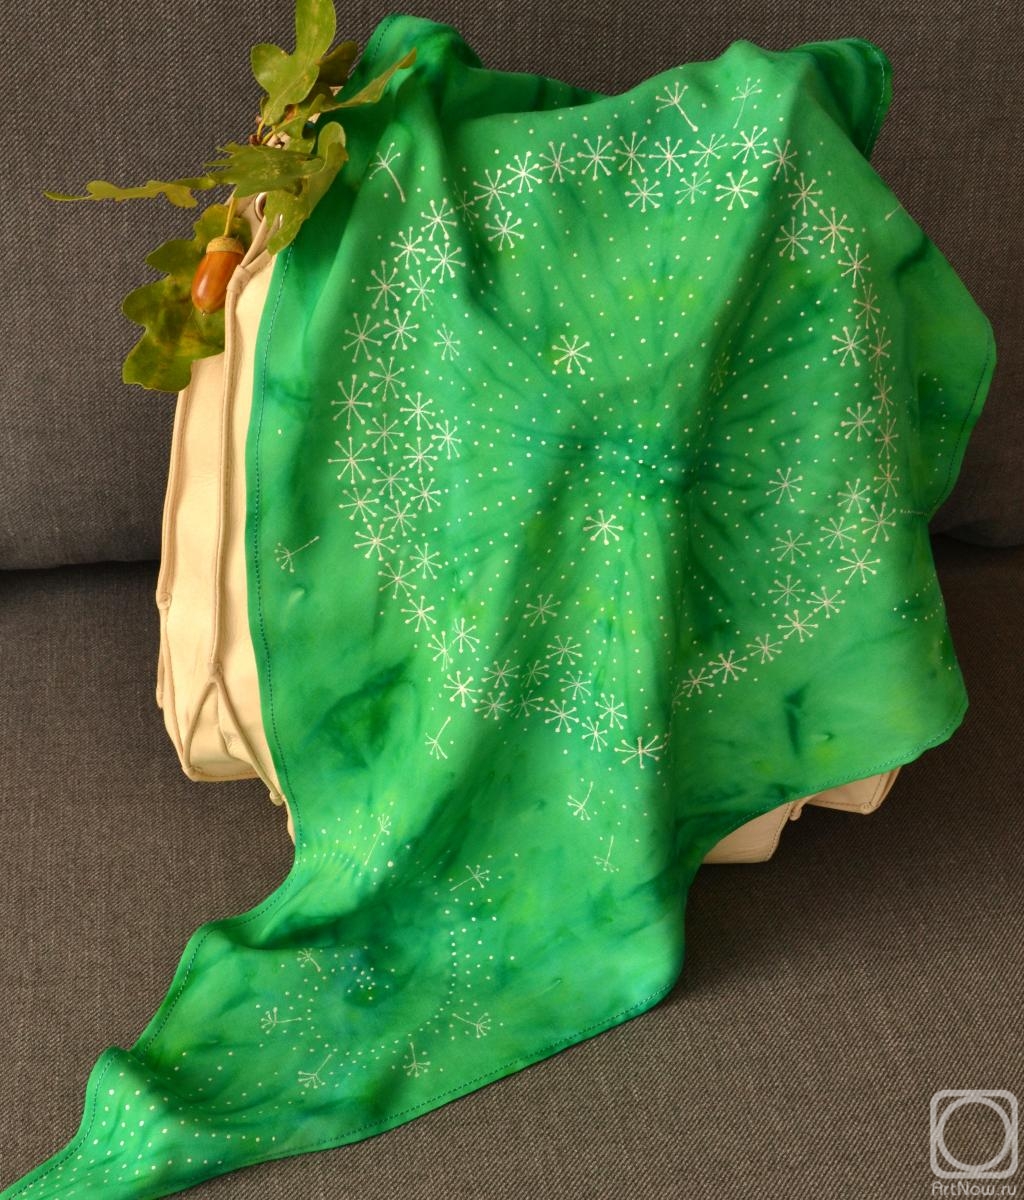 Alferonok Victoria. Cotton scarf with hand-painted Dandelion